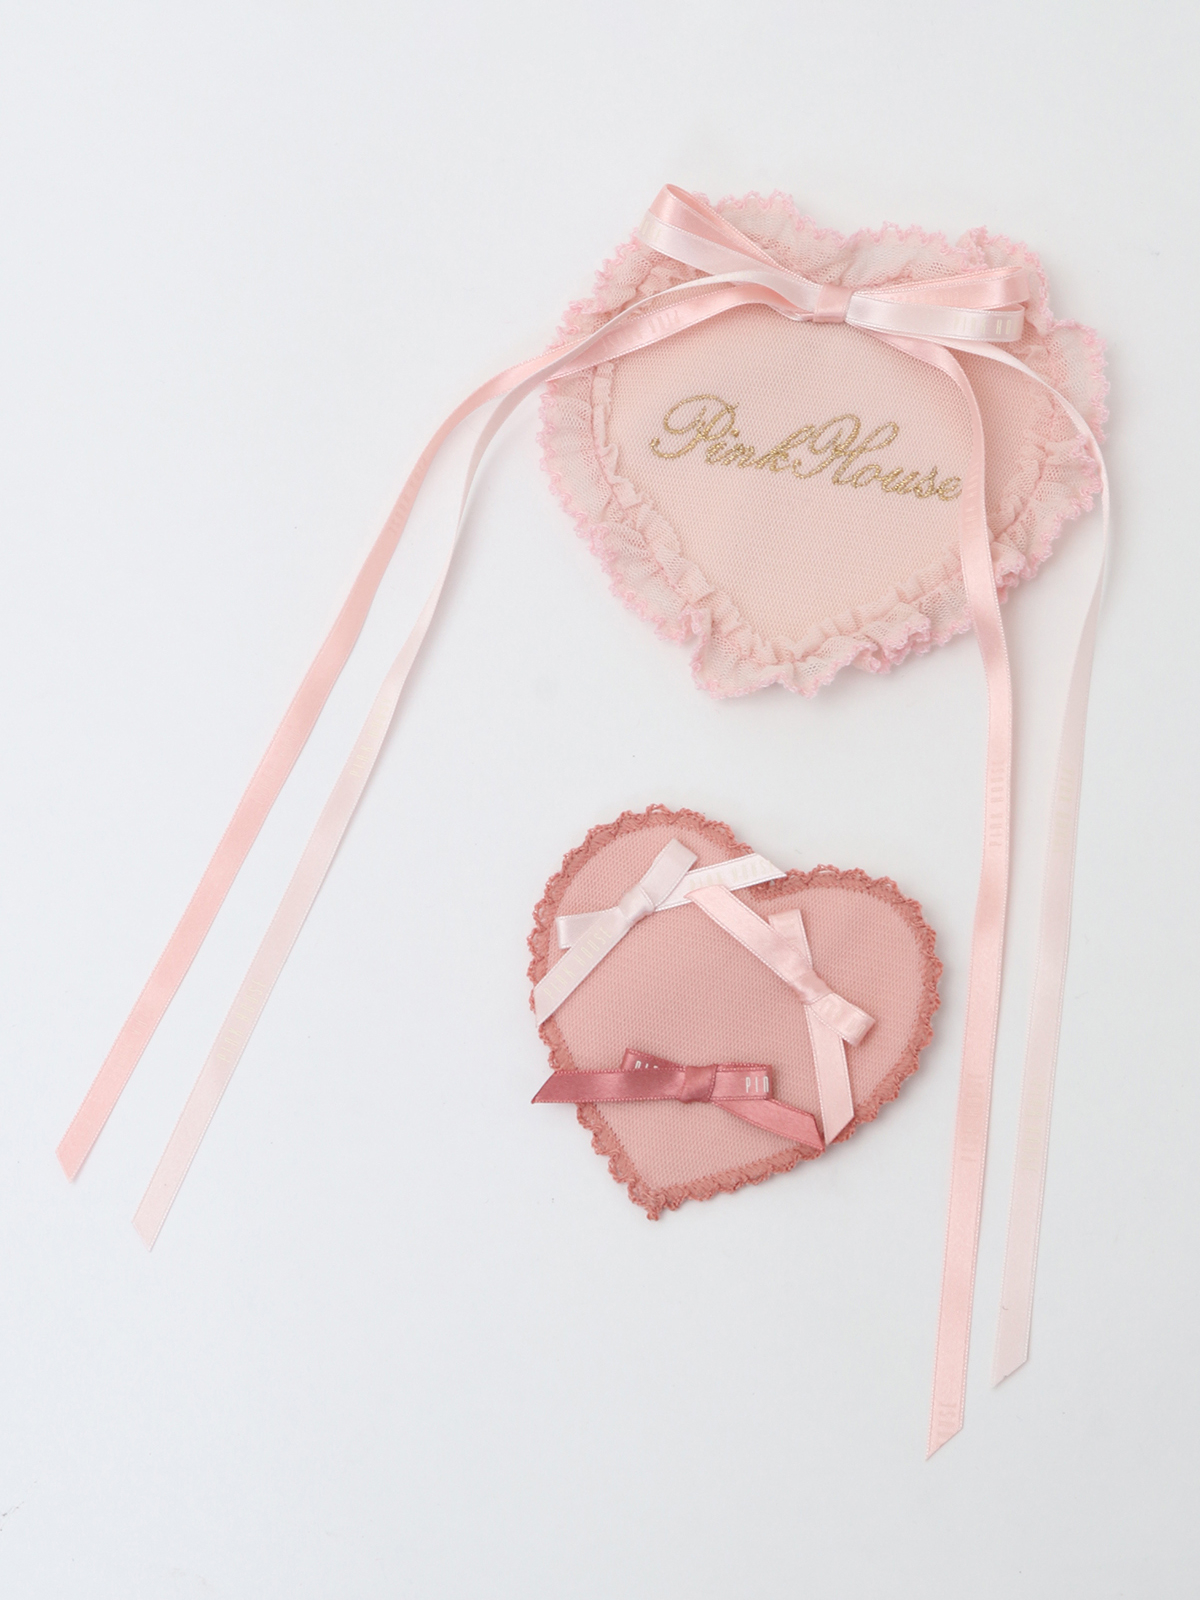 pinkhouse 中国限定款 甜美刺绣蝴蝶结丝带爱心胸针两件套 预约